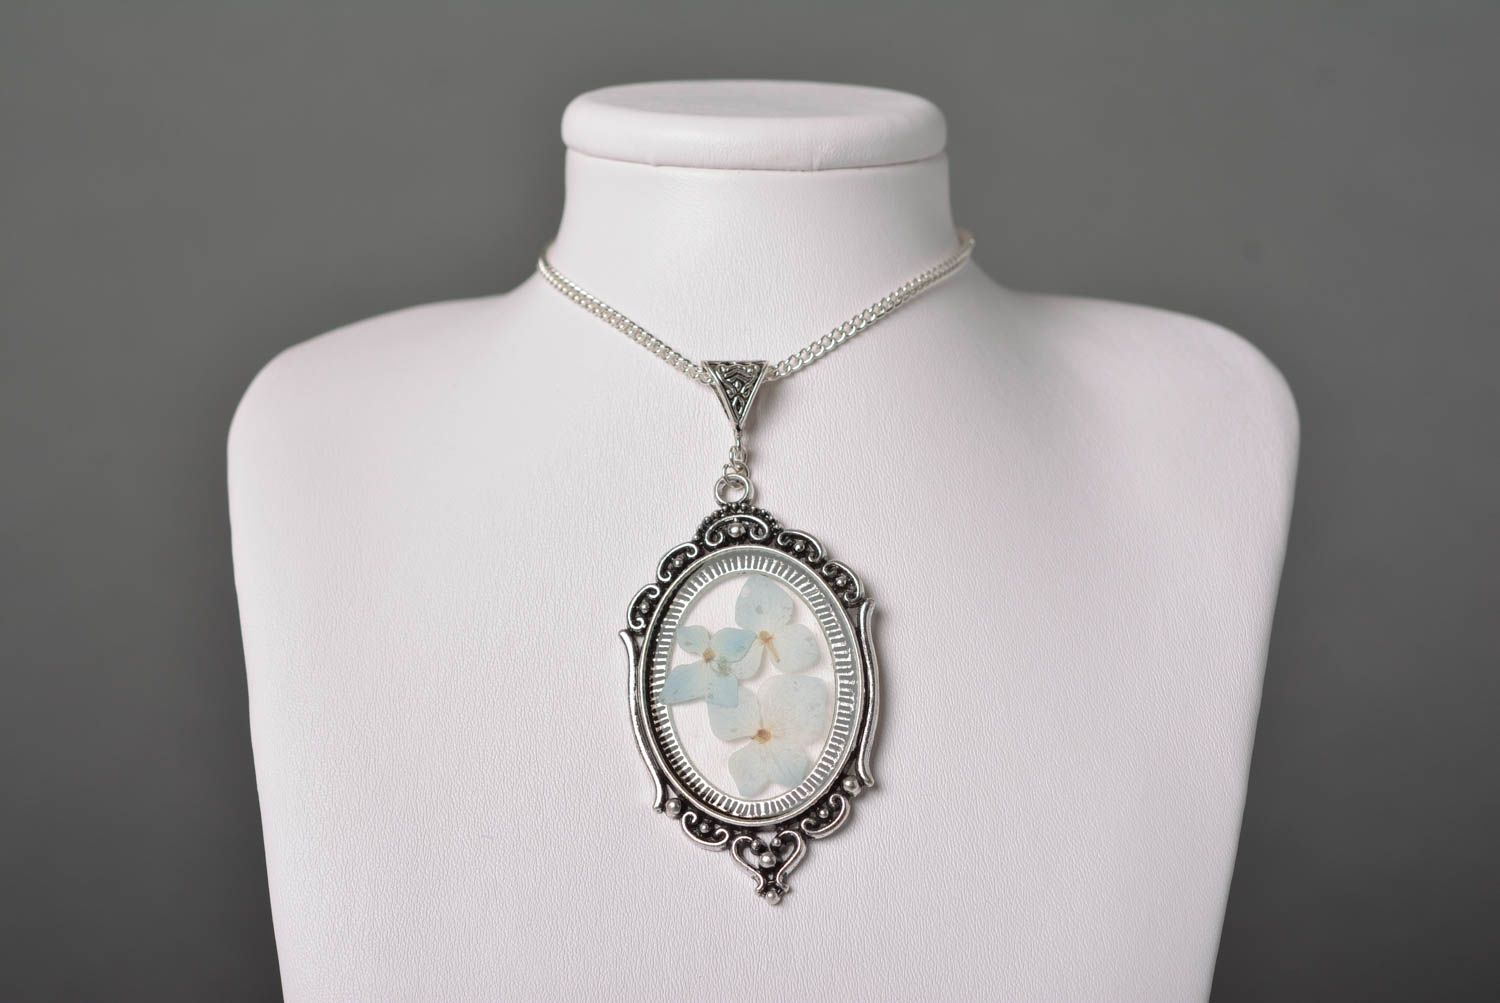 Botanic pendant handmade pendant with natural flowers handmade jewelry photo 2